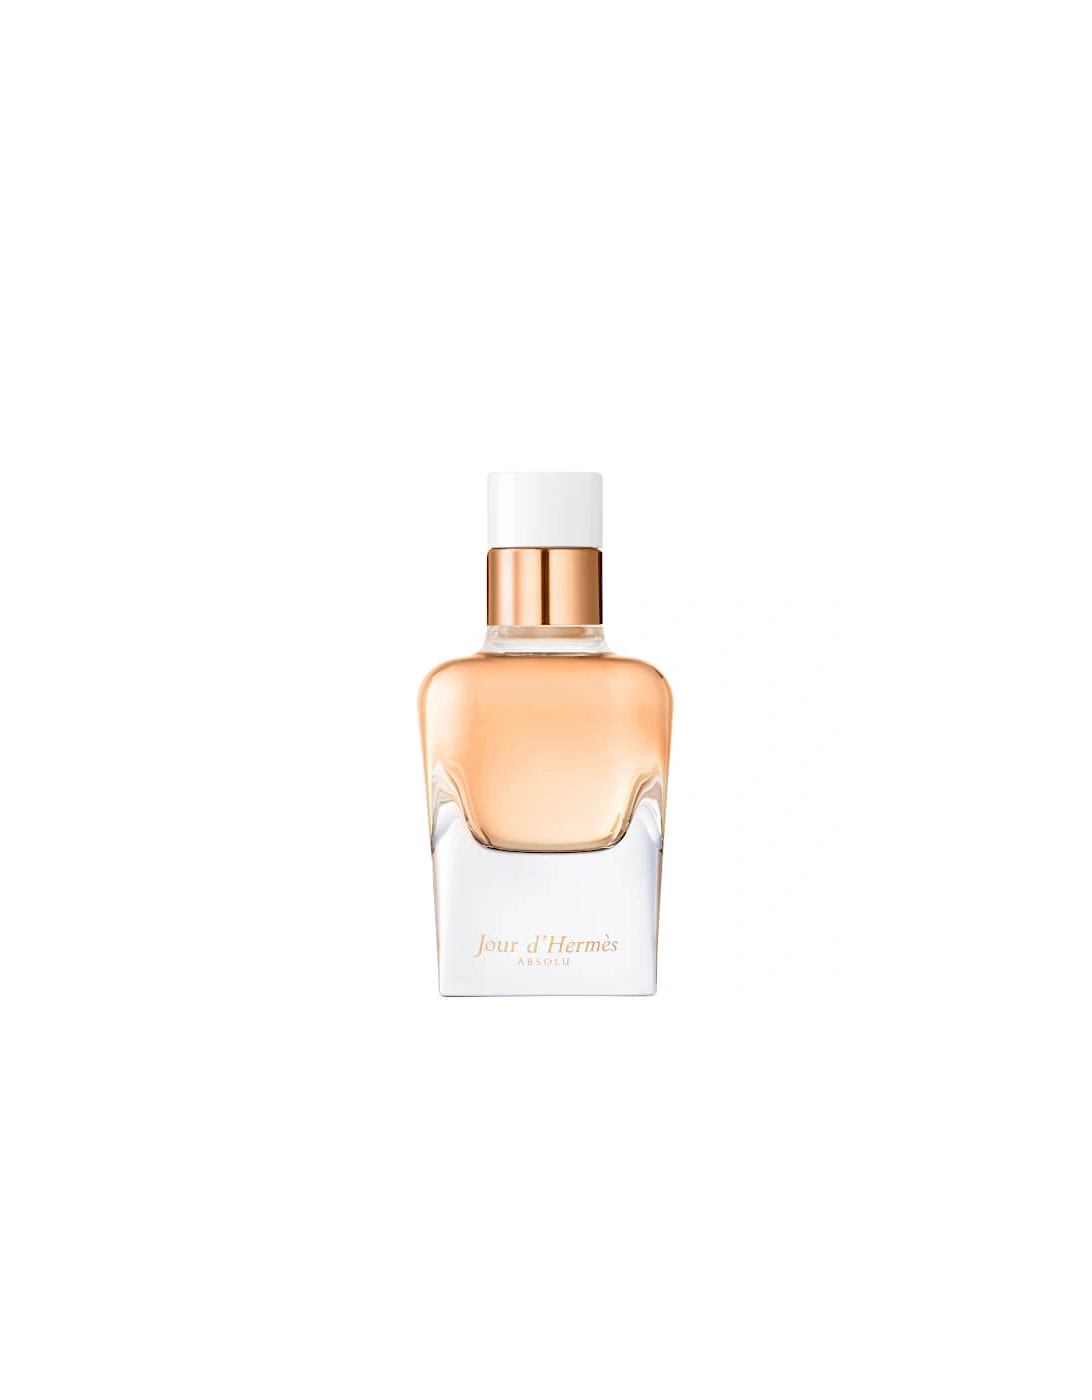 Hermès Jour d'Hermès Absolu Eau de Parfum Refillable Natural Spray 50ml, 2 of 1